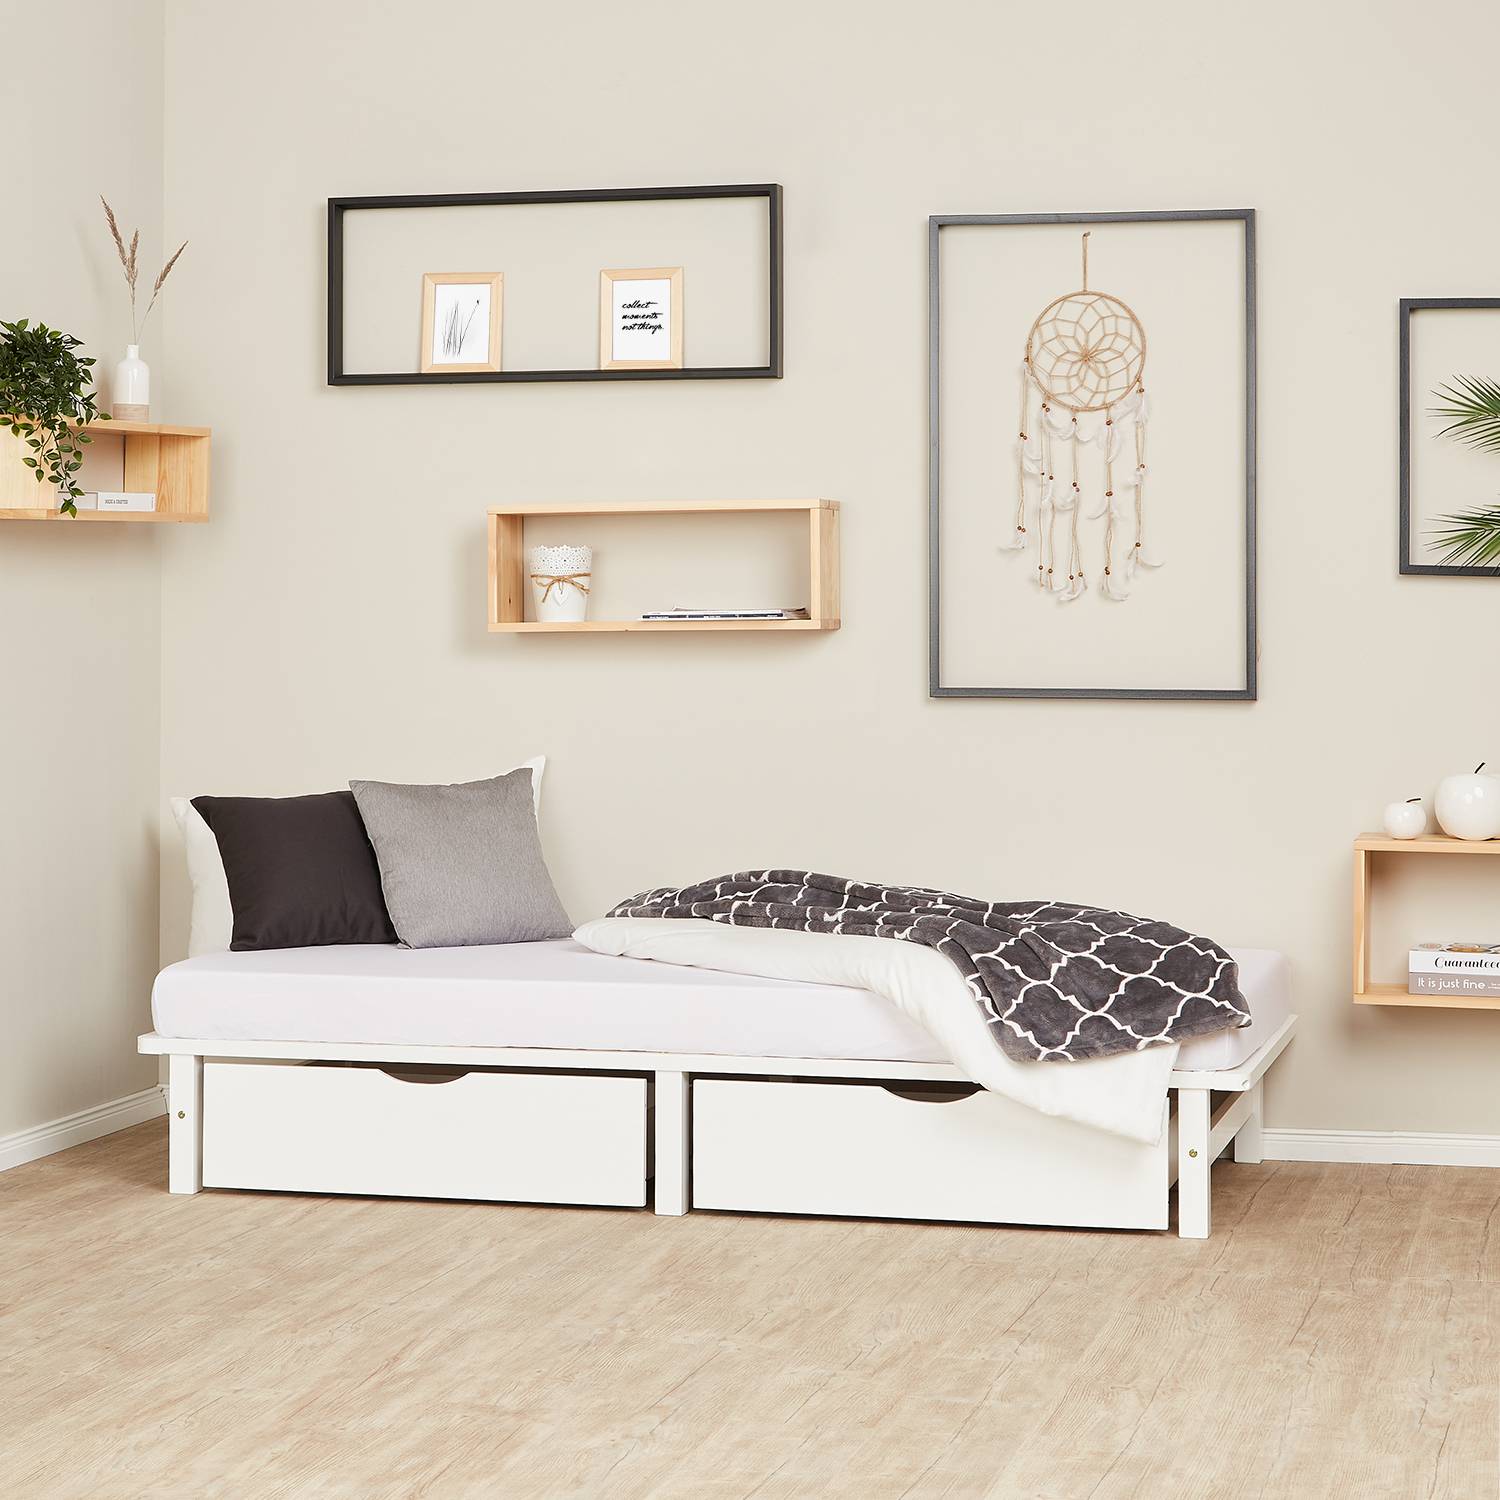 Palettenbett 90x200 cm mit Lattenrost und 2 Bettkästen Schubläden Massivholzbett Palettenmöbel Bett Holzbett 